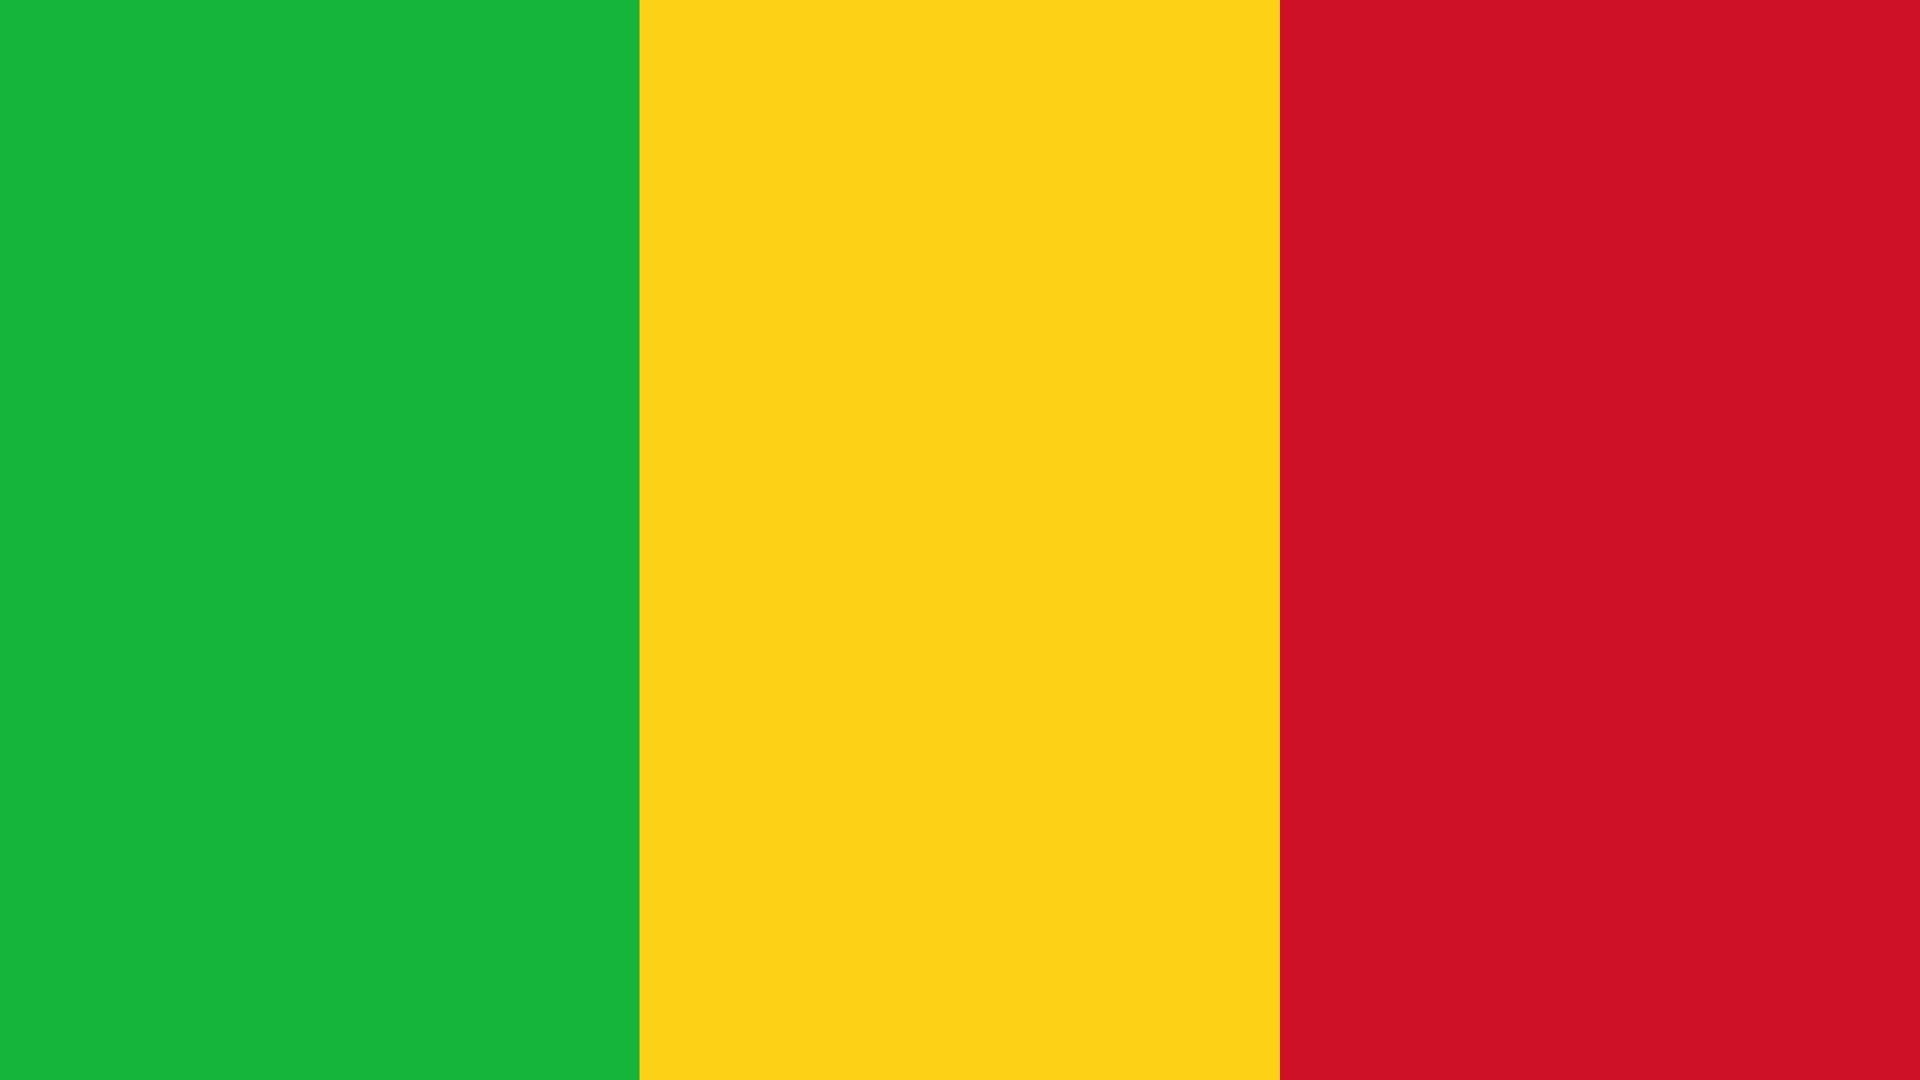 A bandeira é possui três cores verticais: verde, ouro e vermelho, ou as cores Pan-Africanas.